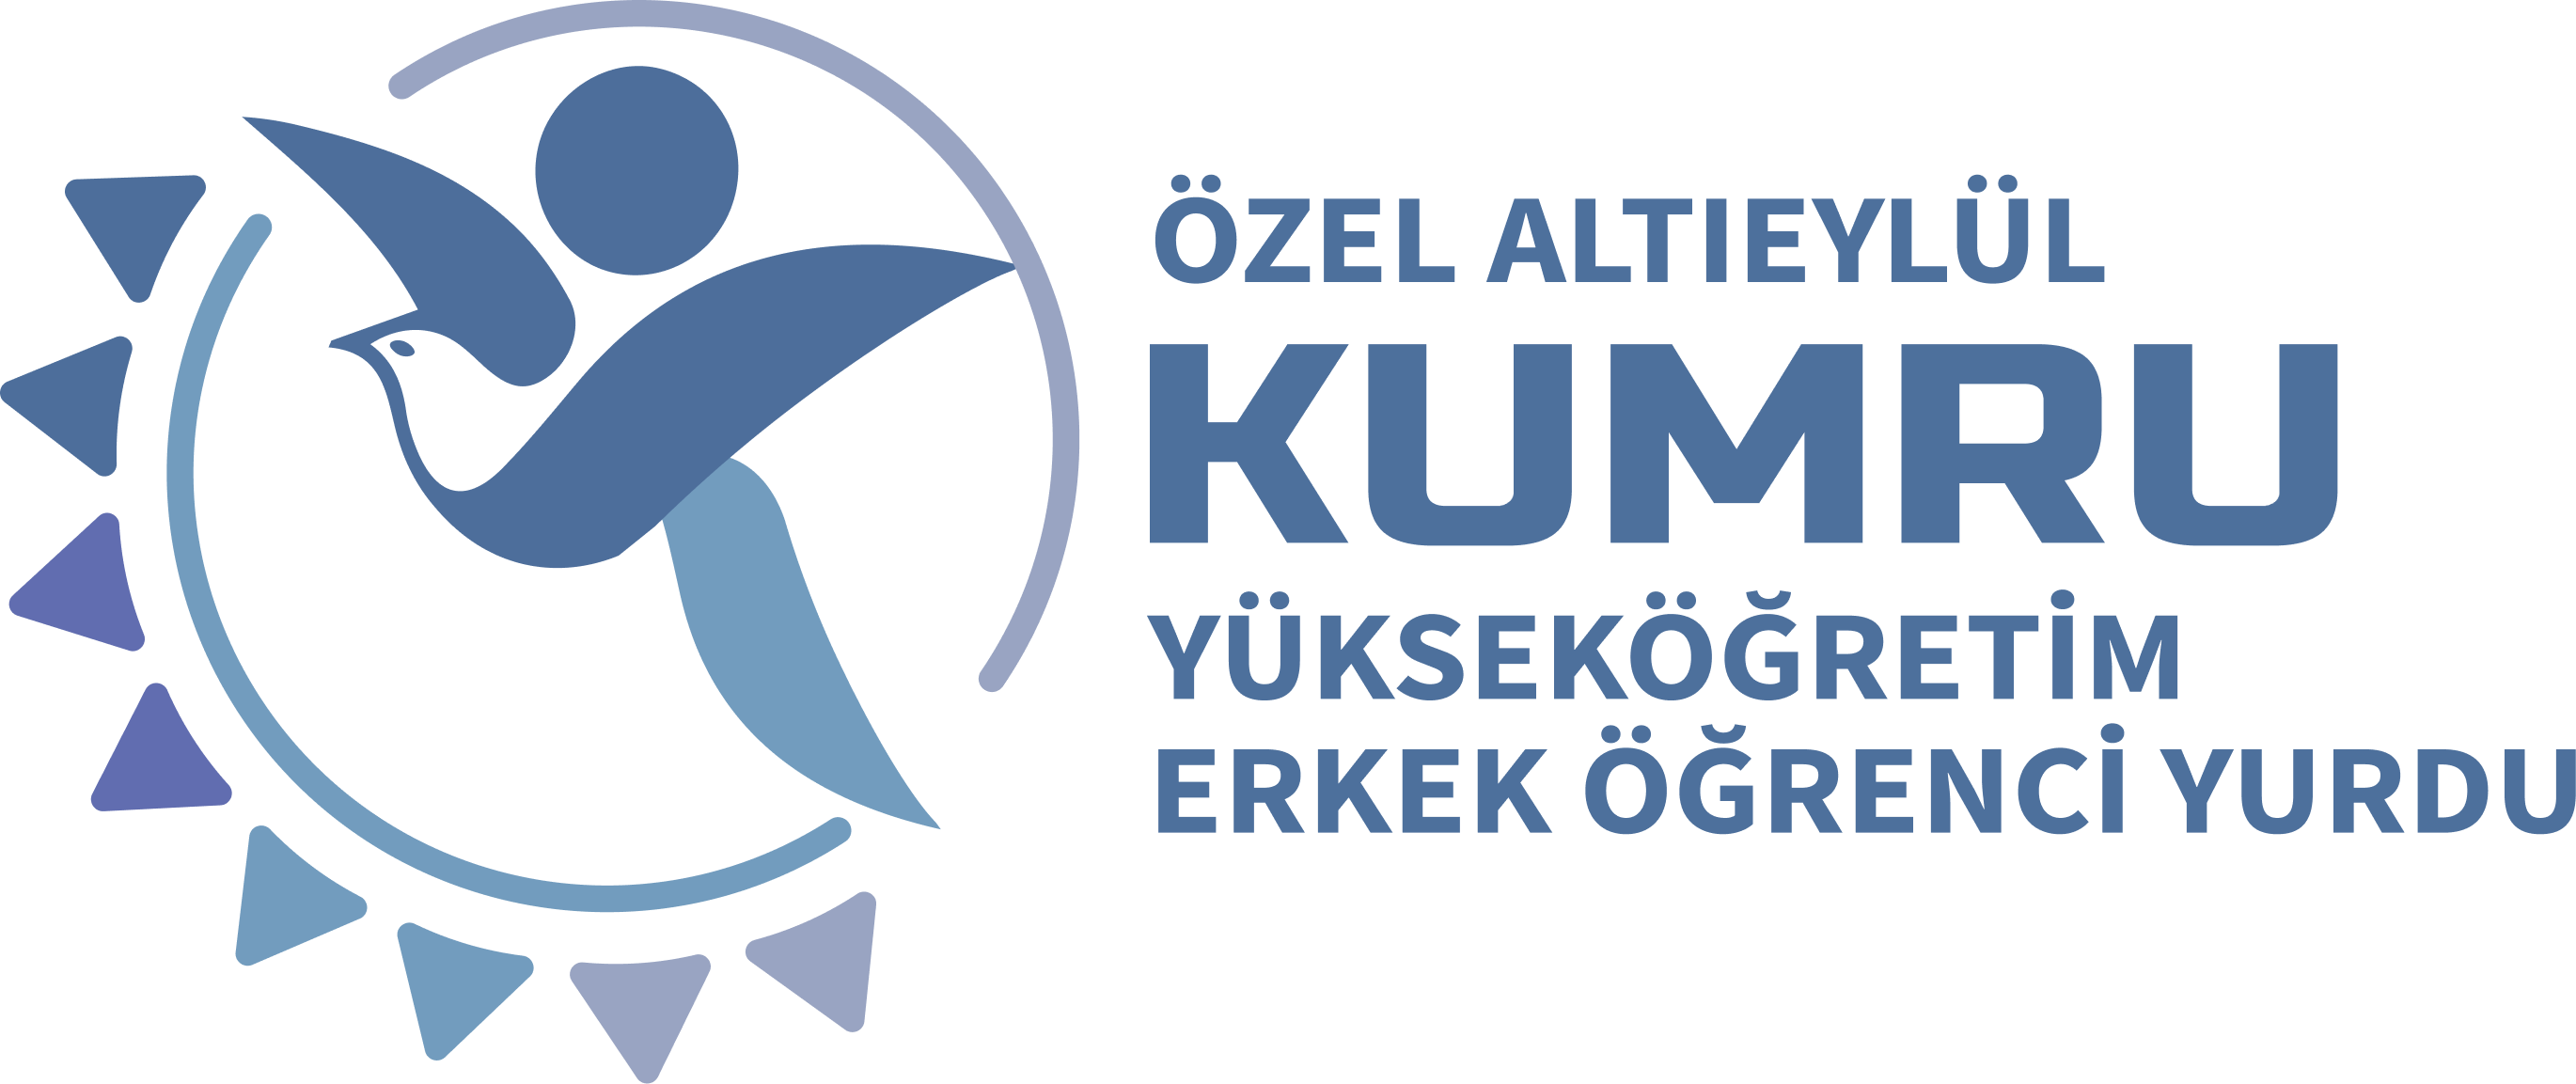 Kumru Erkek Öğrenci Yurdu logo